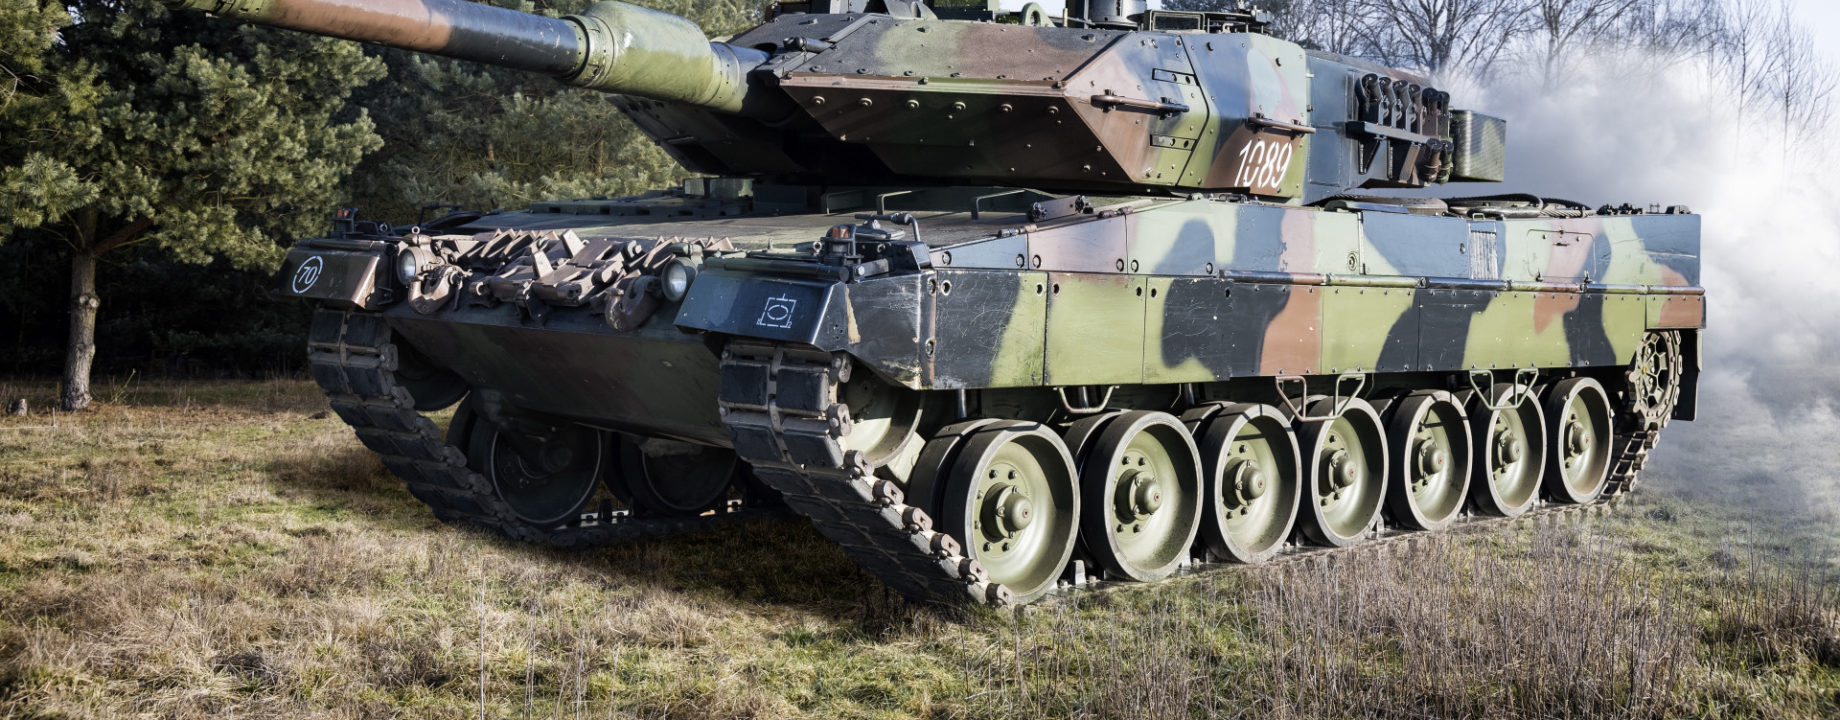 Leopard 2a4 harckocsi lengyel hadero 592364